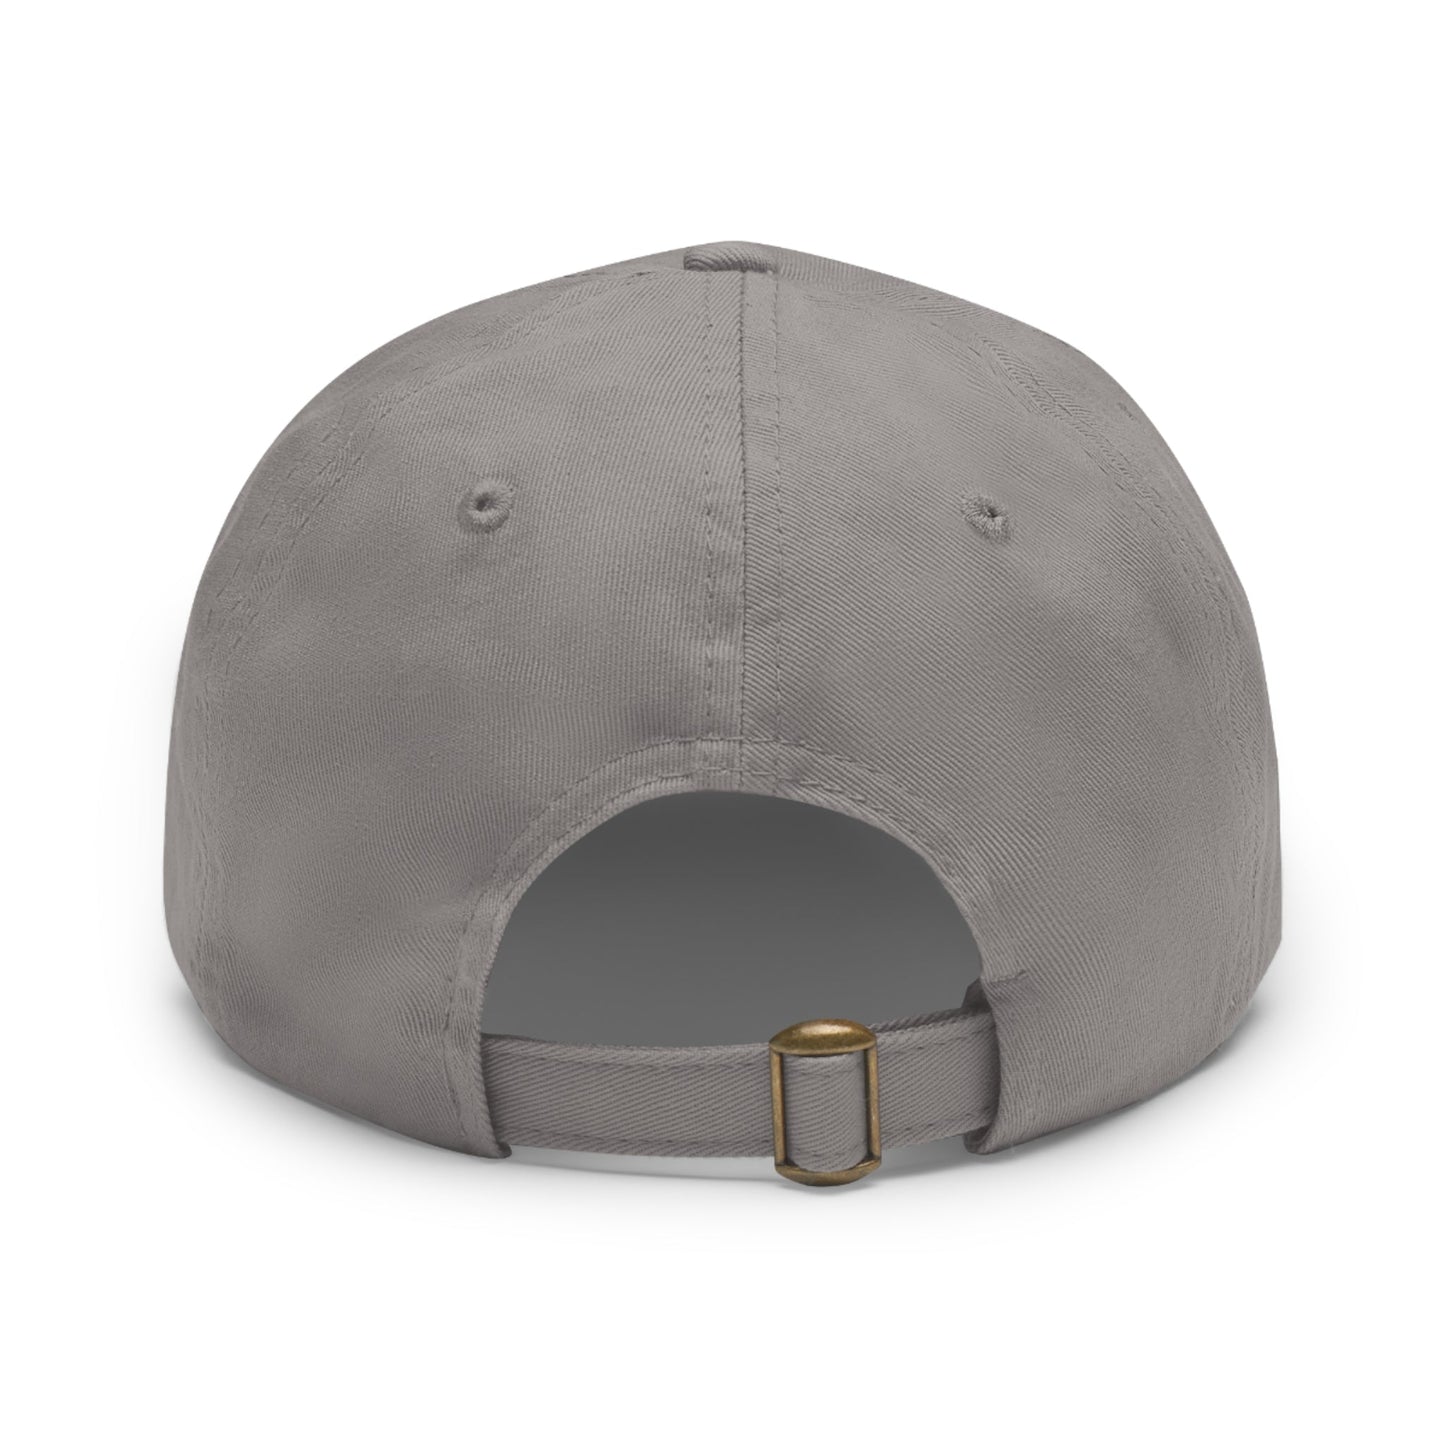 OUTFIQUE Leather Patch Hat | Outfique | Hats | Cotton